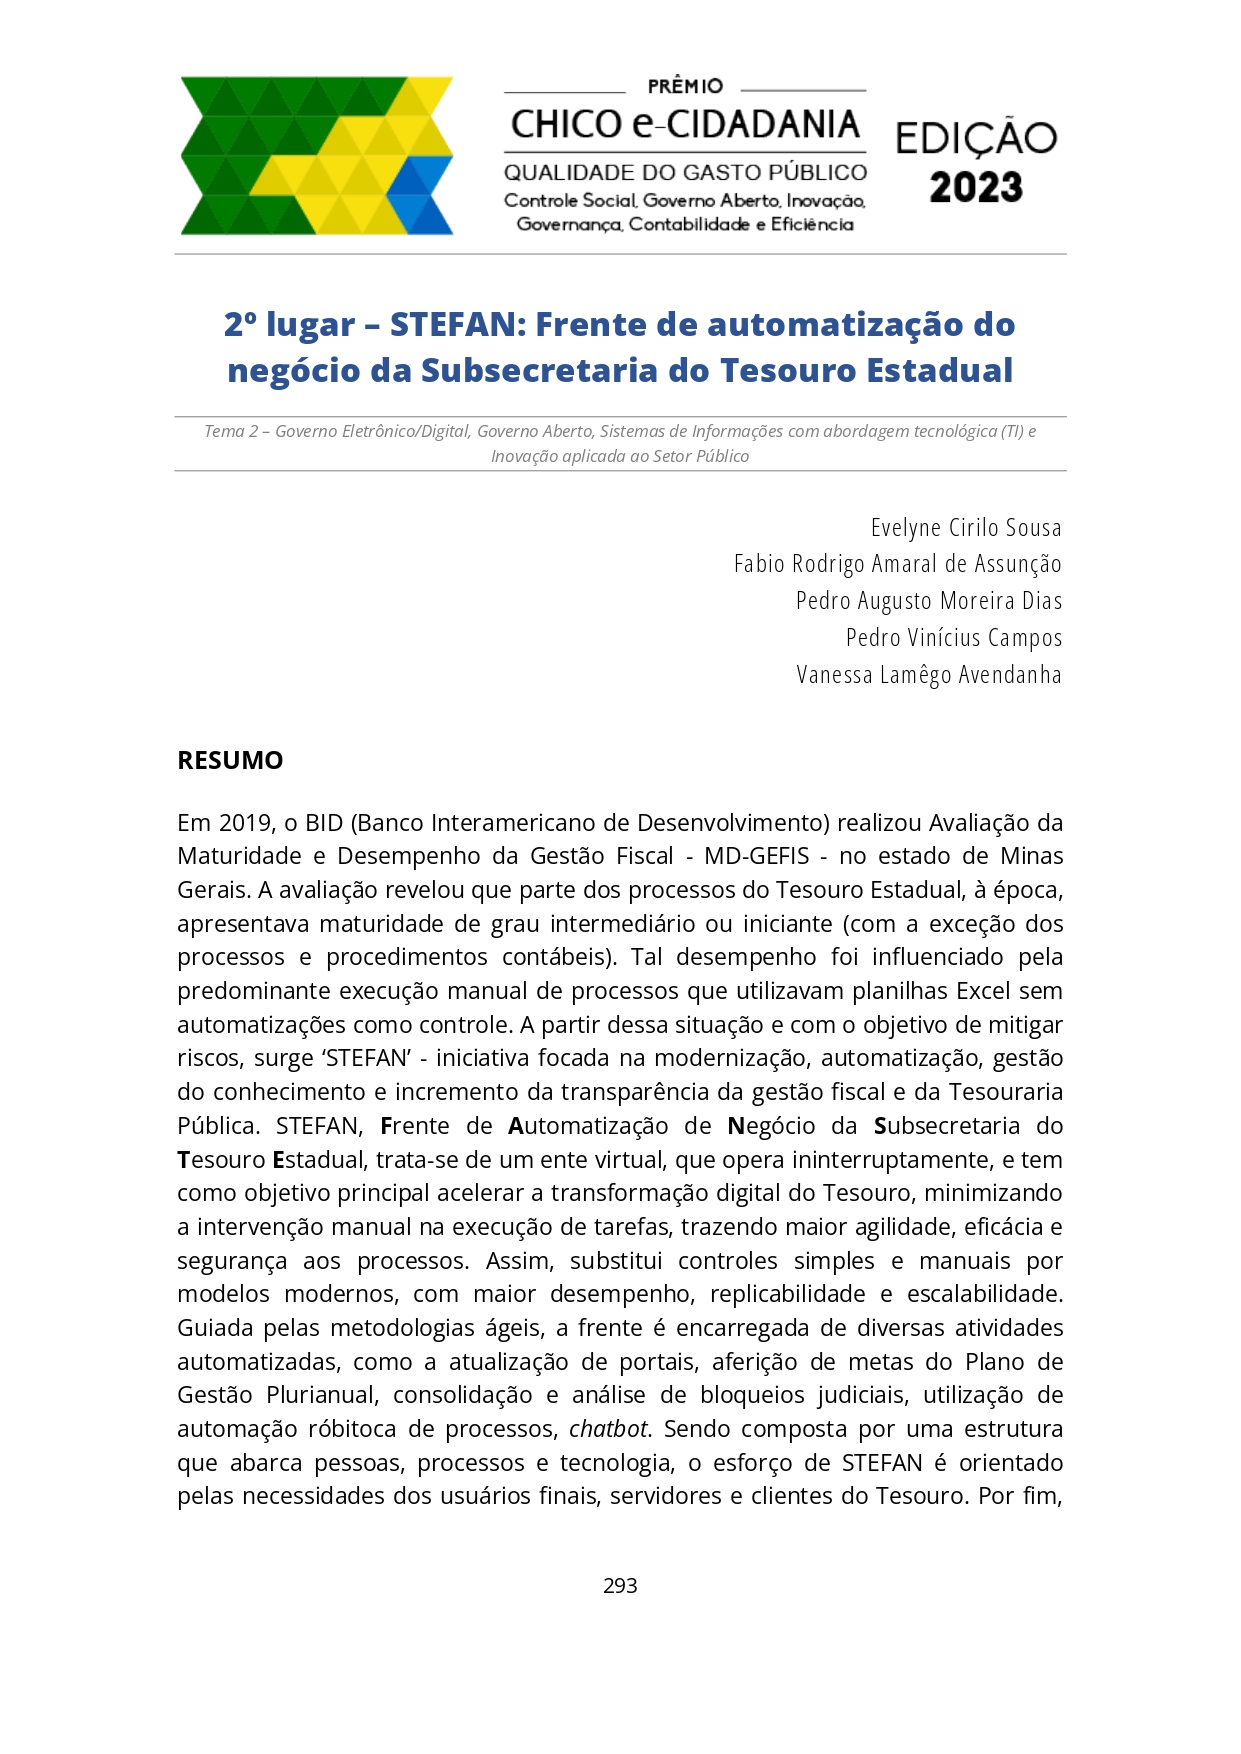 Miniatura STEFAN: Frente de automatização do negócio da Subsecretaria do Tesouro Estadual